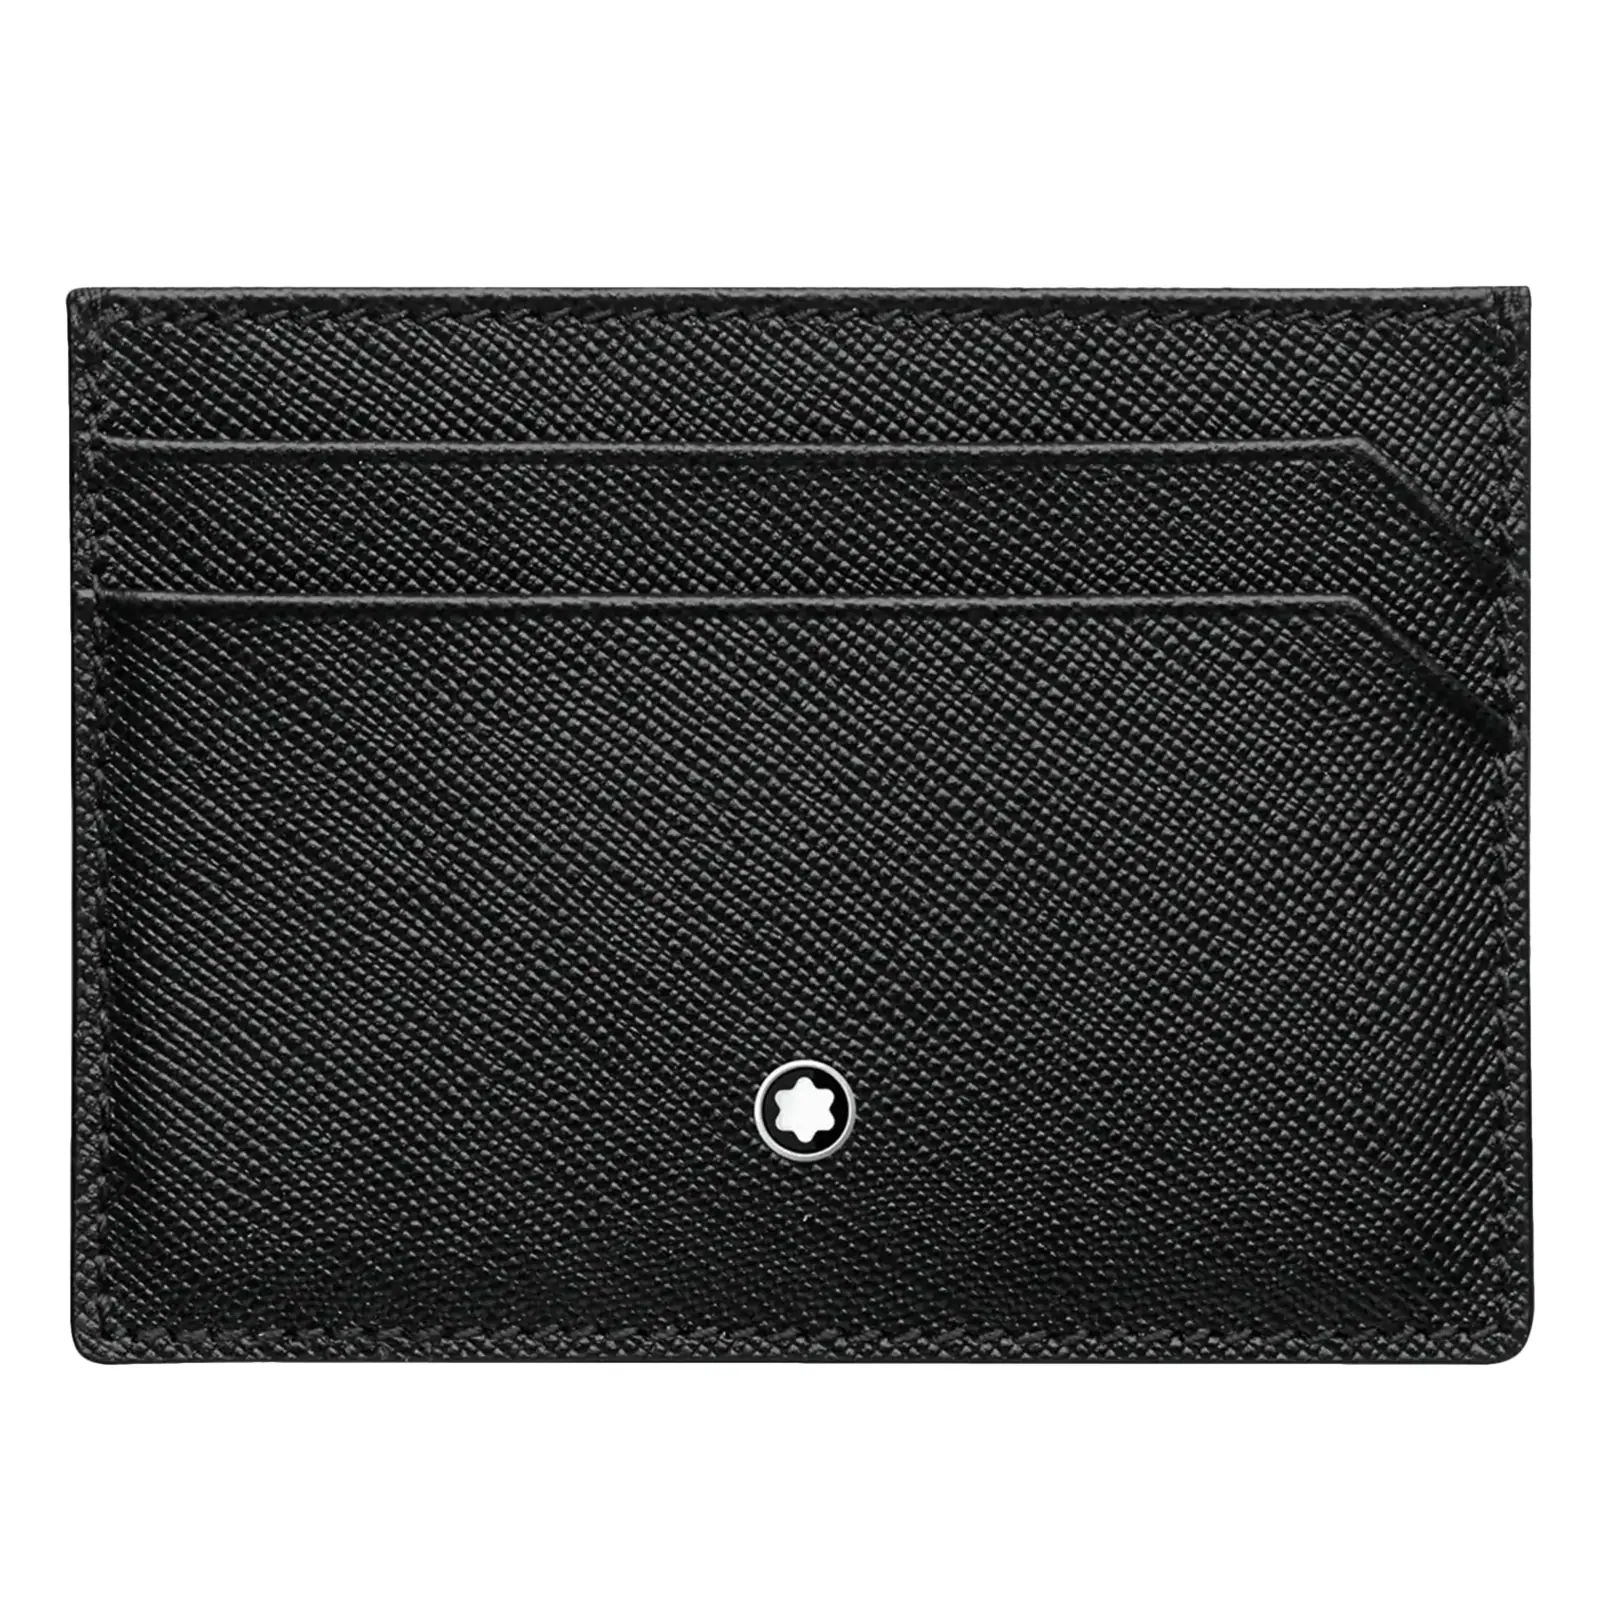 Sartorial Five Pocket Card Holder in Black Leather